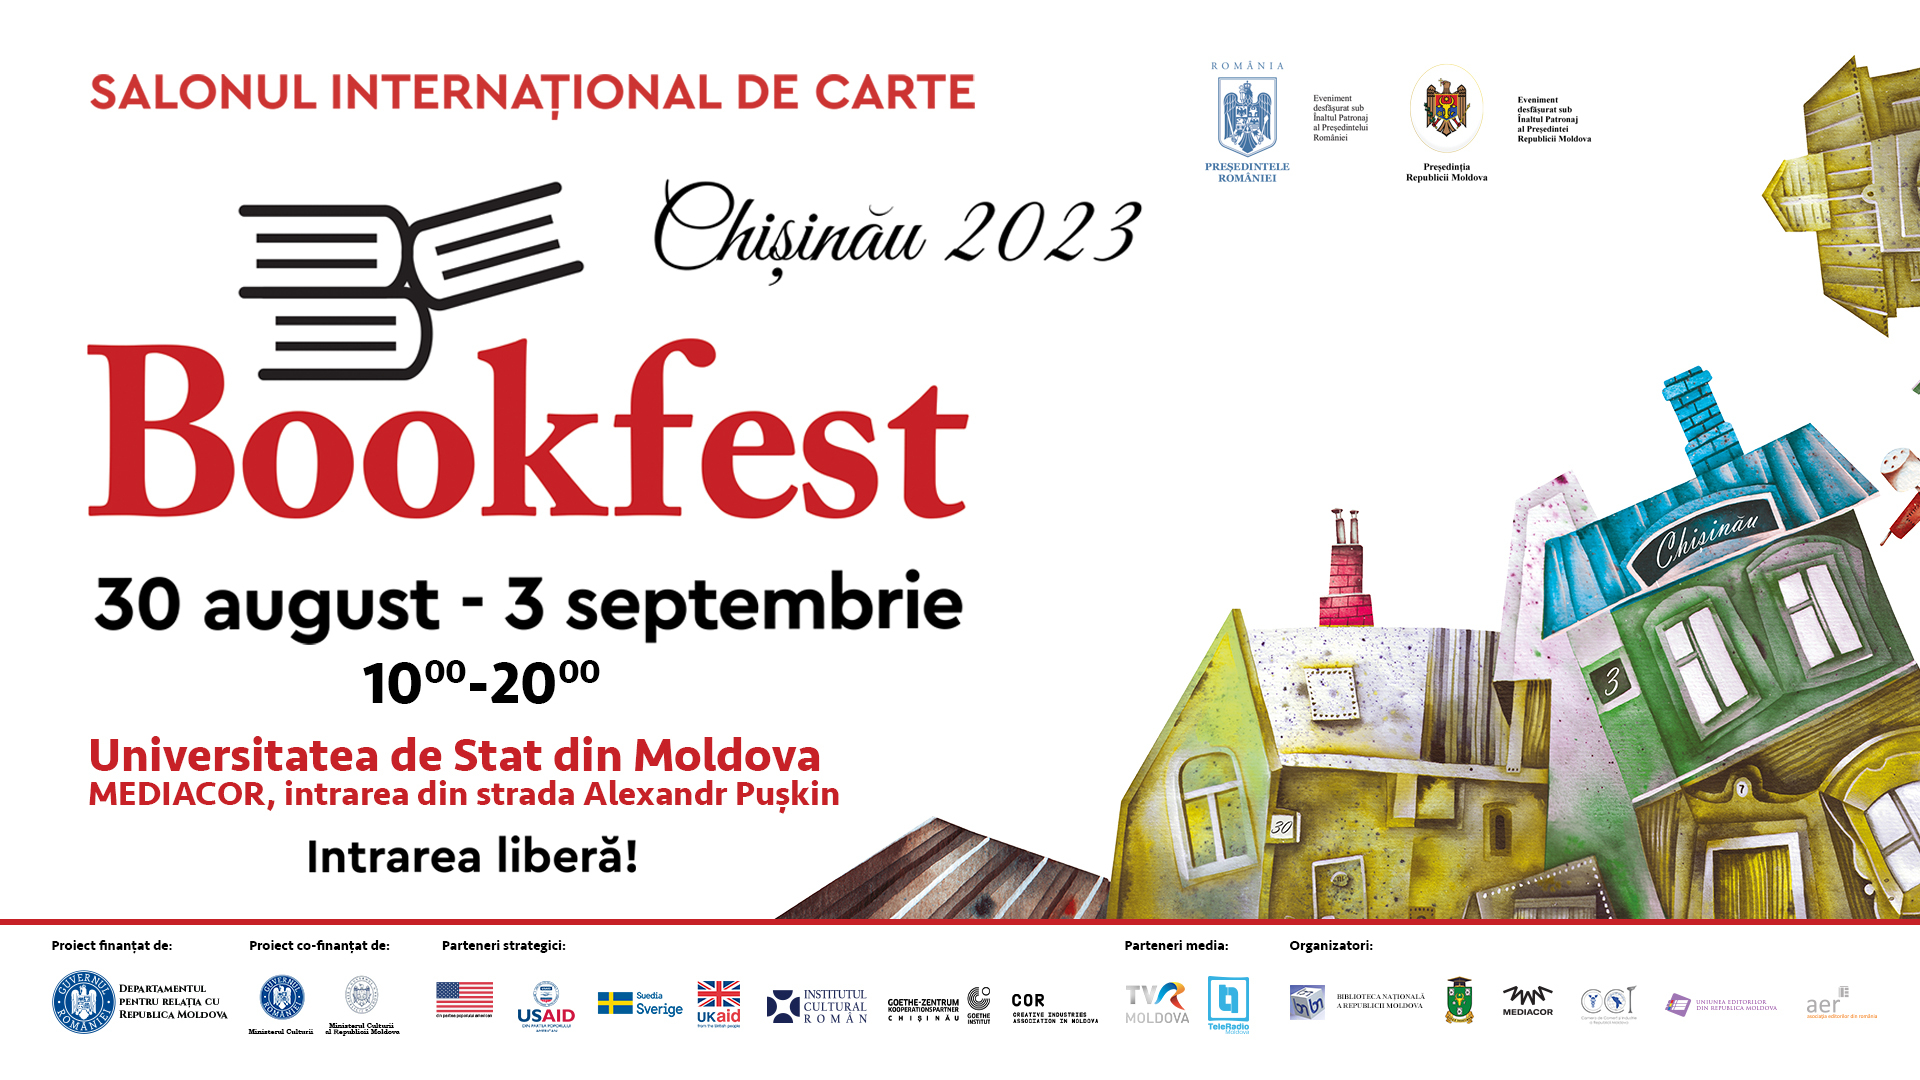 Salonul International de Carte Bookfest Chisinau 2023